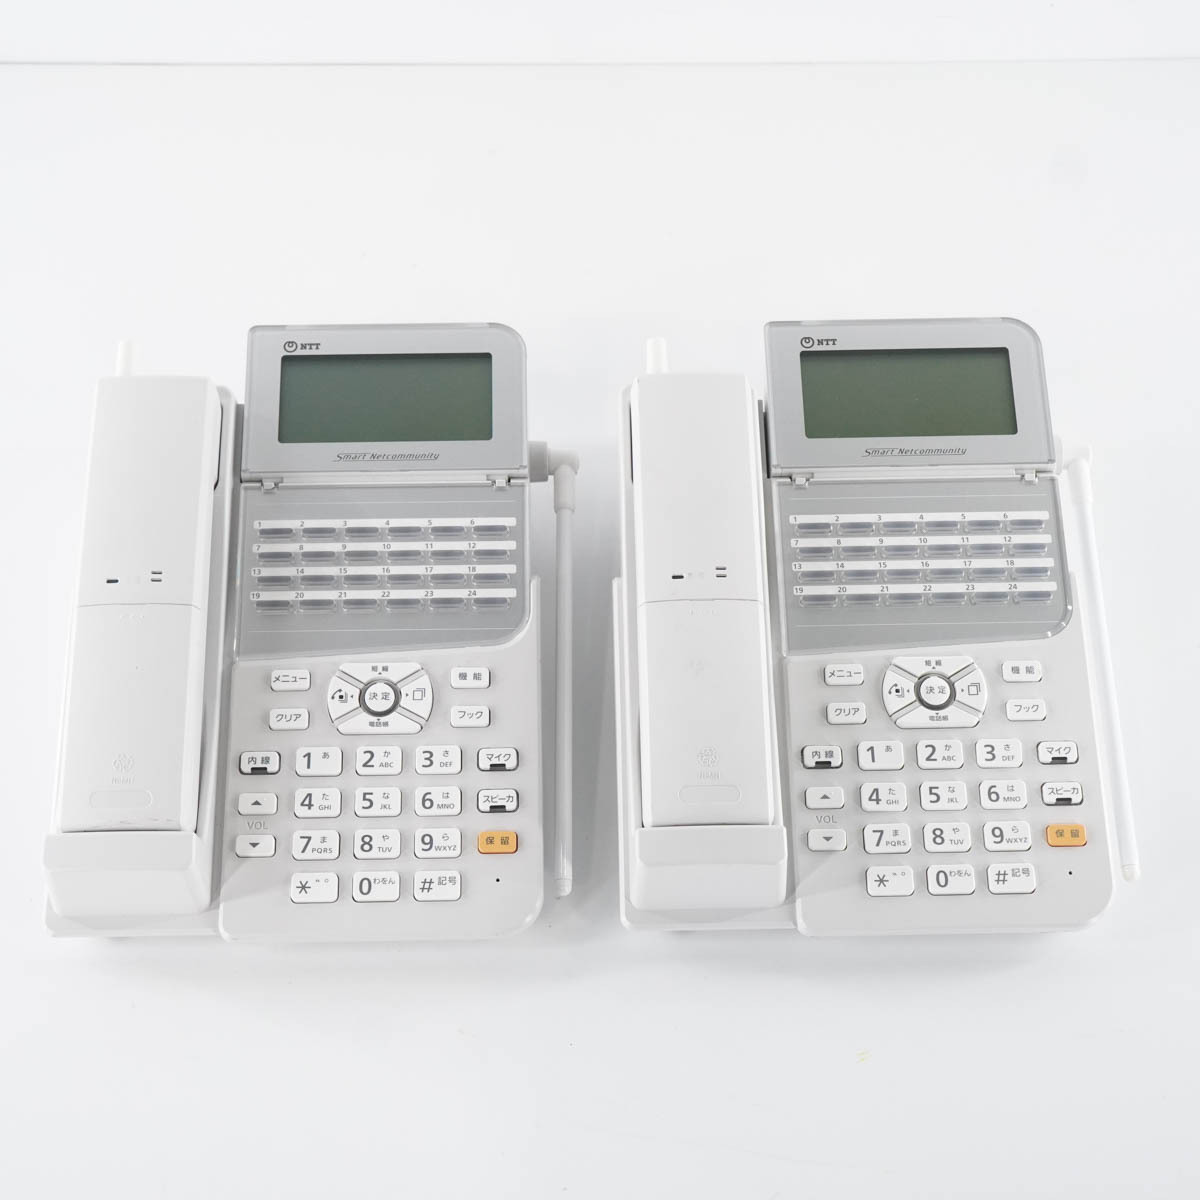 PG]USED 8日保証 セット NTT αZX ZXM-ME-(1) 主装置 電話機 ビジネス 